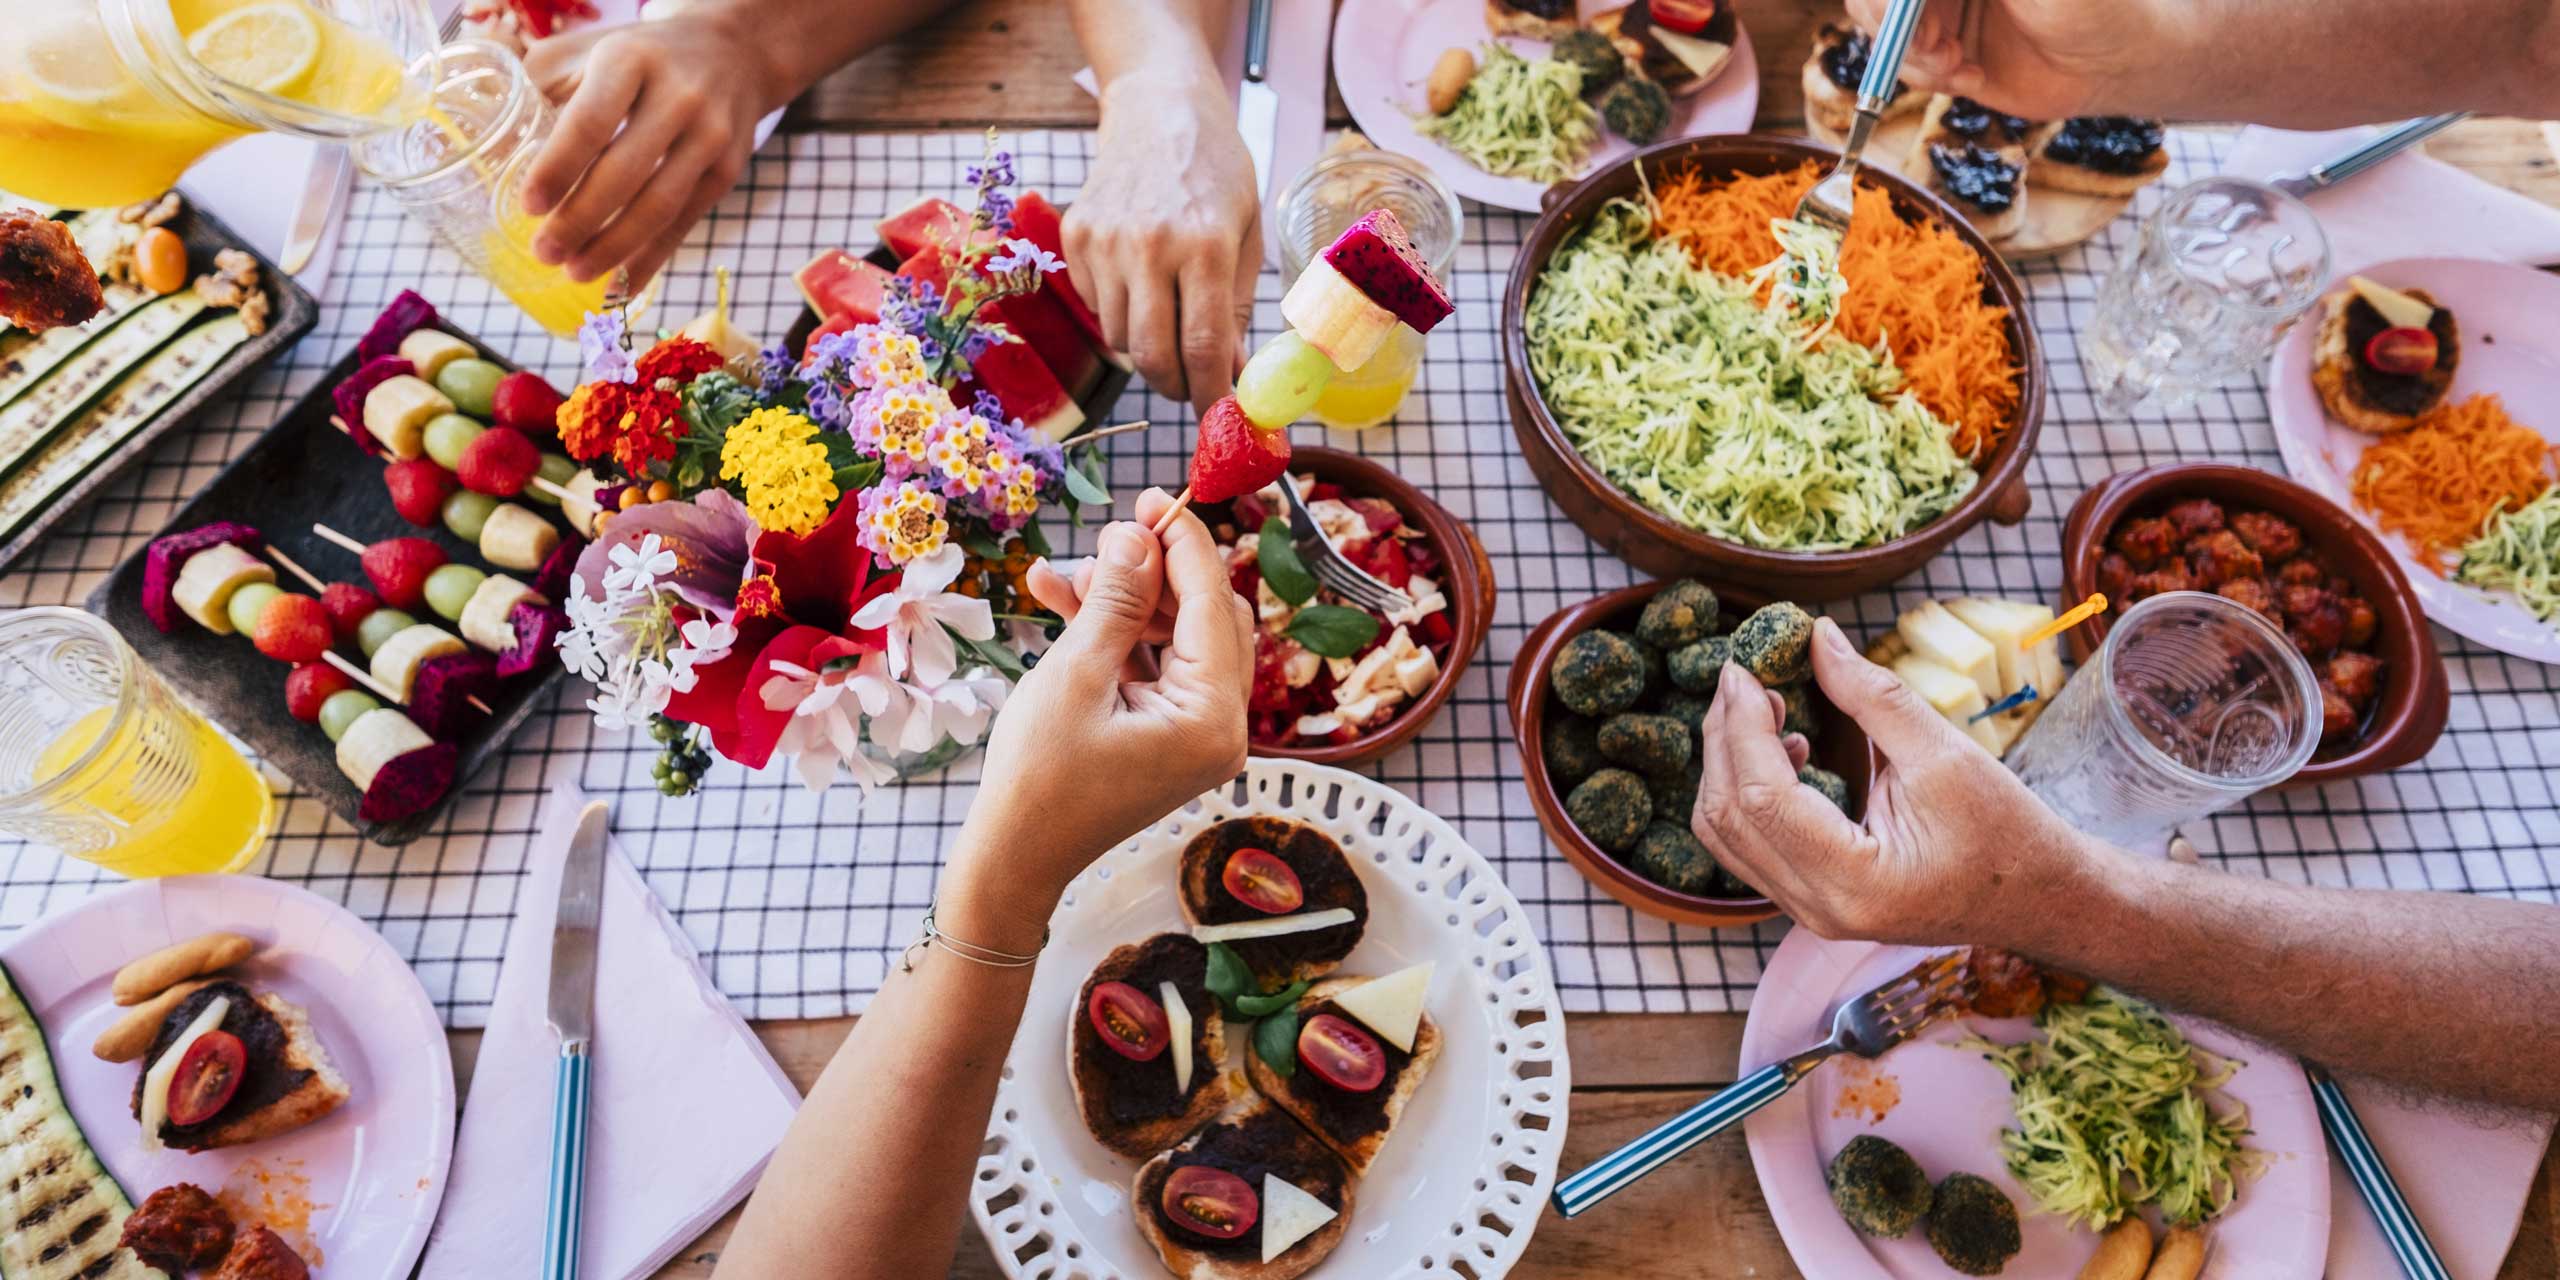 Dekorative Draufsicht einer gemeinsamen Mahlzeit mit mehreren Gerichten in Schalen, Hände greifen nach Obstspießen und Tapas